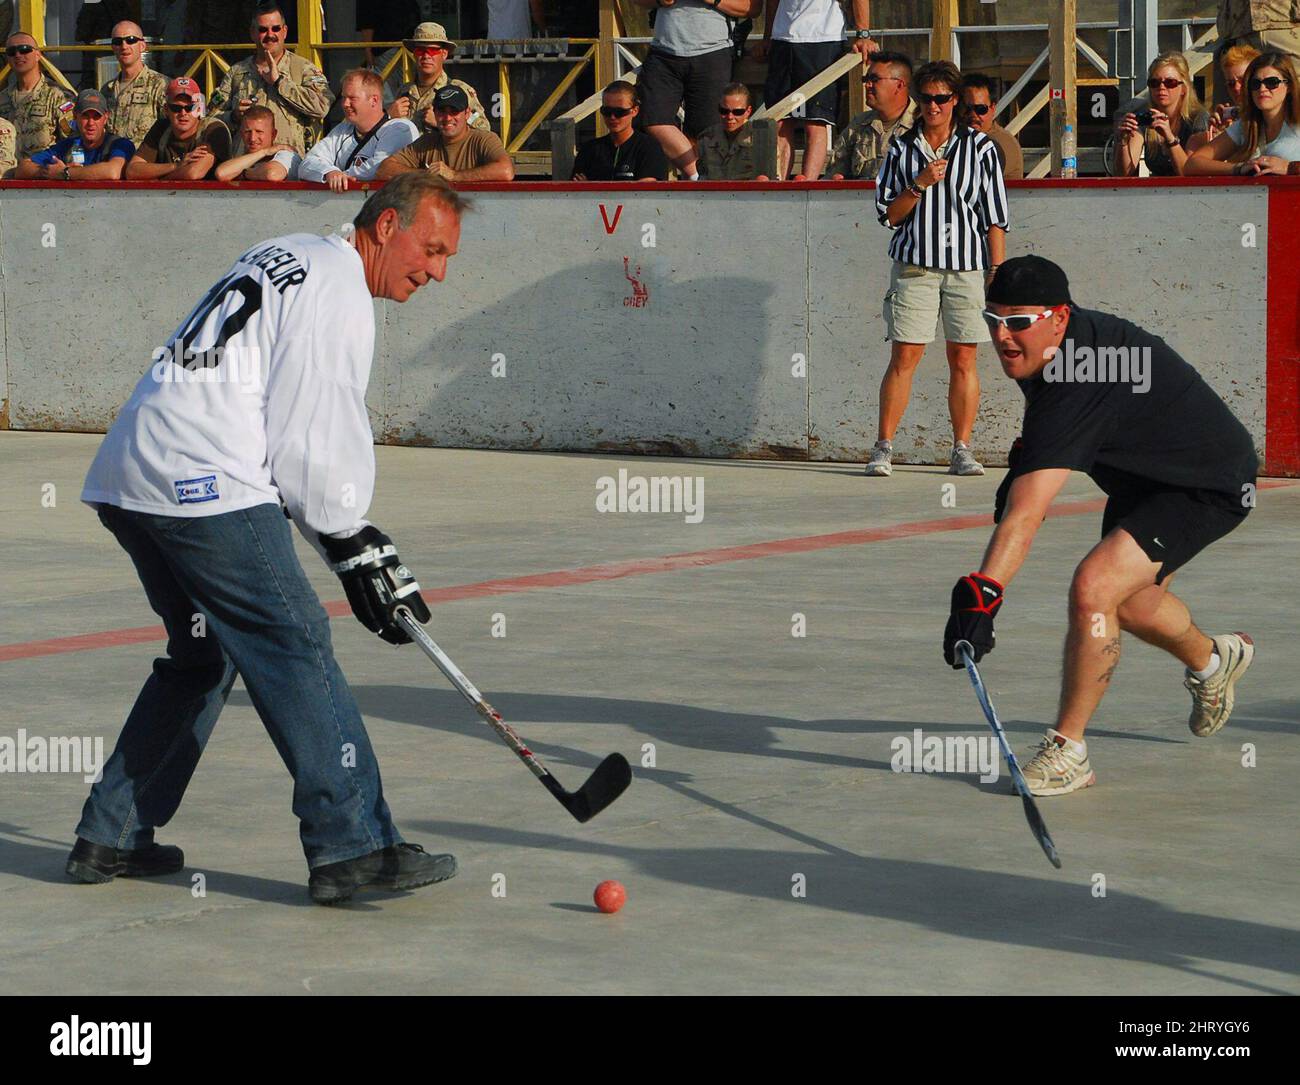 Der ehemalige NHL-Star Guy Lafleur spielt am Donnerstag, den 14. Oktober 2010, mit kanadischen Truppen im Kandahar Airfield, Afghanistan, Ballhockey. DIE KANADISCHE PRESSE/Jonathan Montpetit Stockfoto